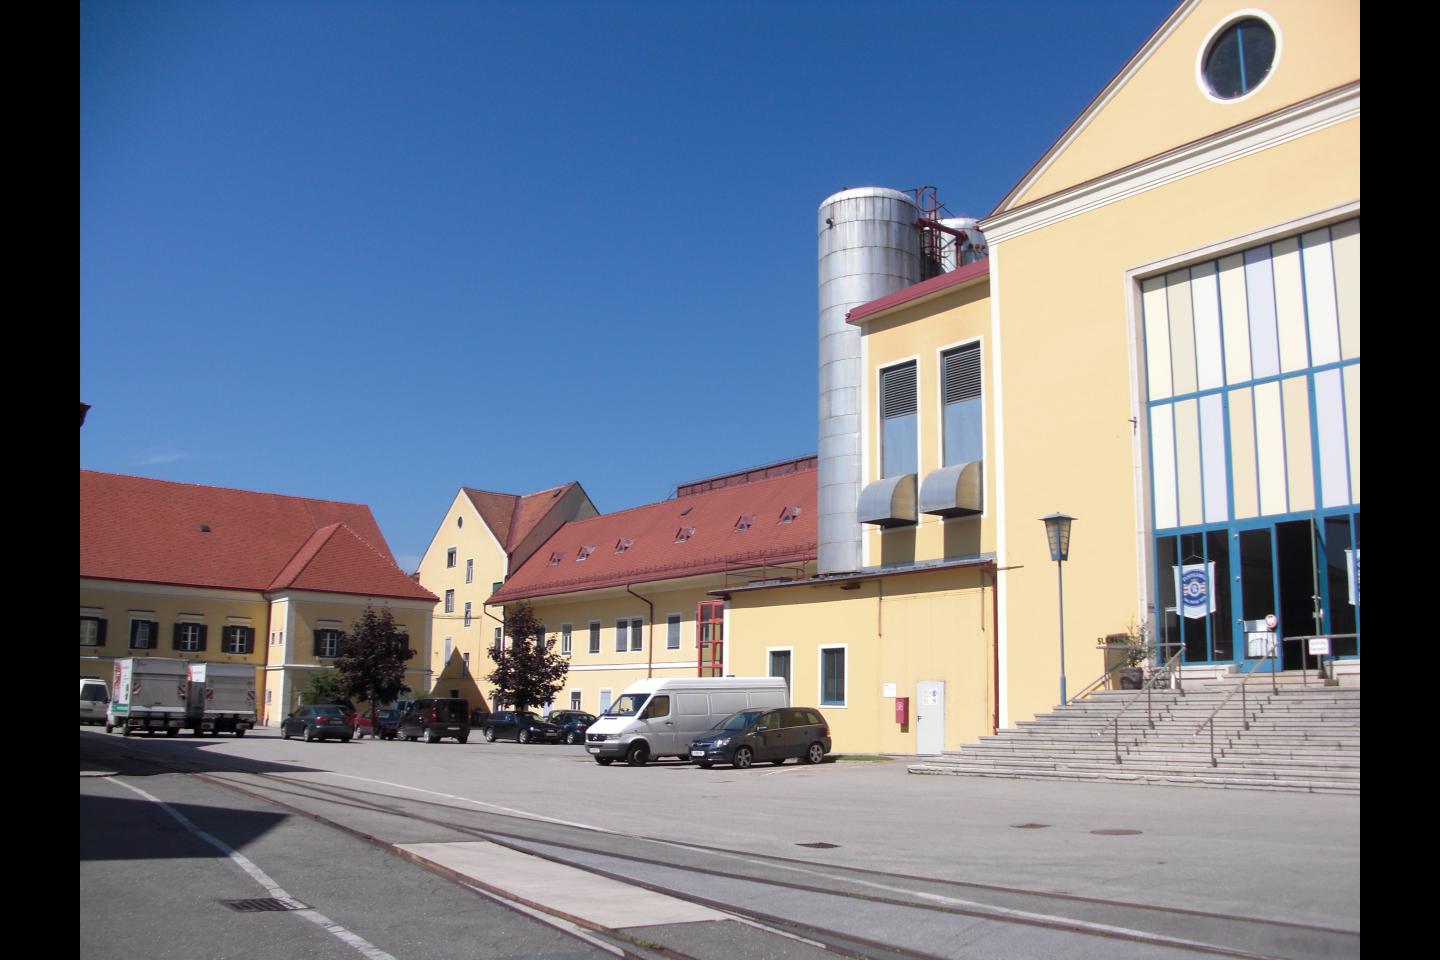 Die Film Commission ist die zentrale Service- und Anlaufstelle für Filmschaffende in Graz.